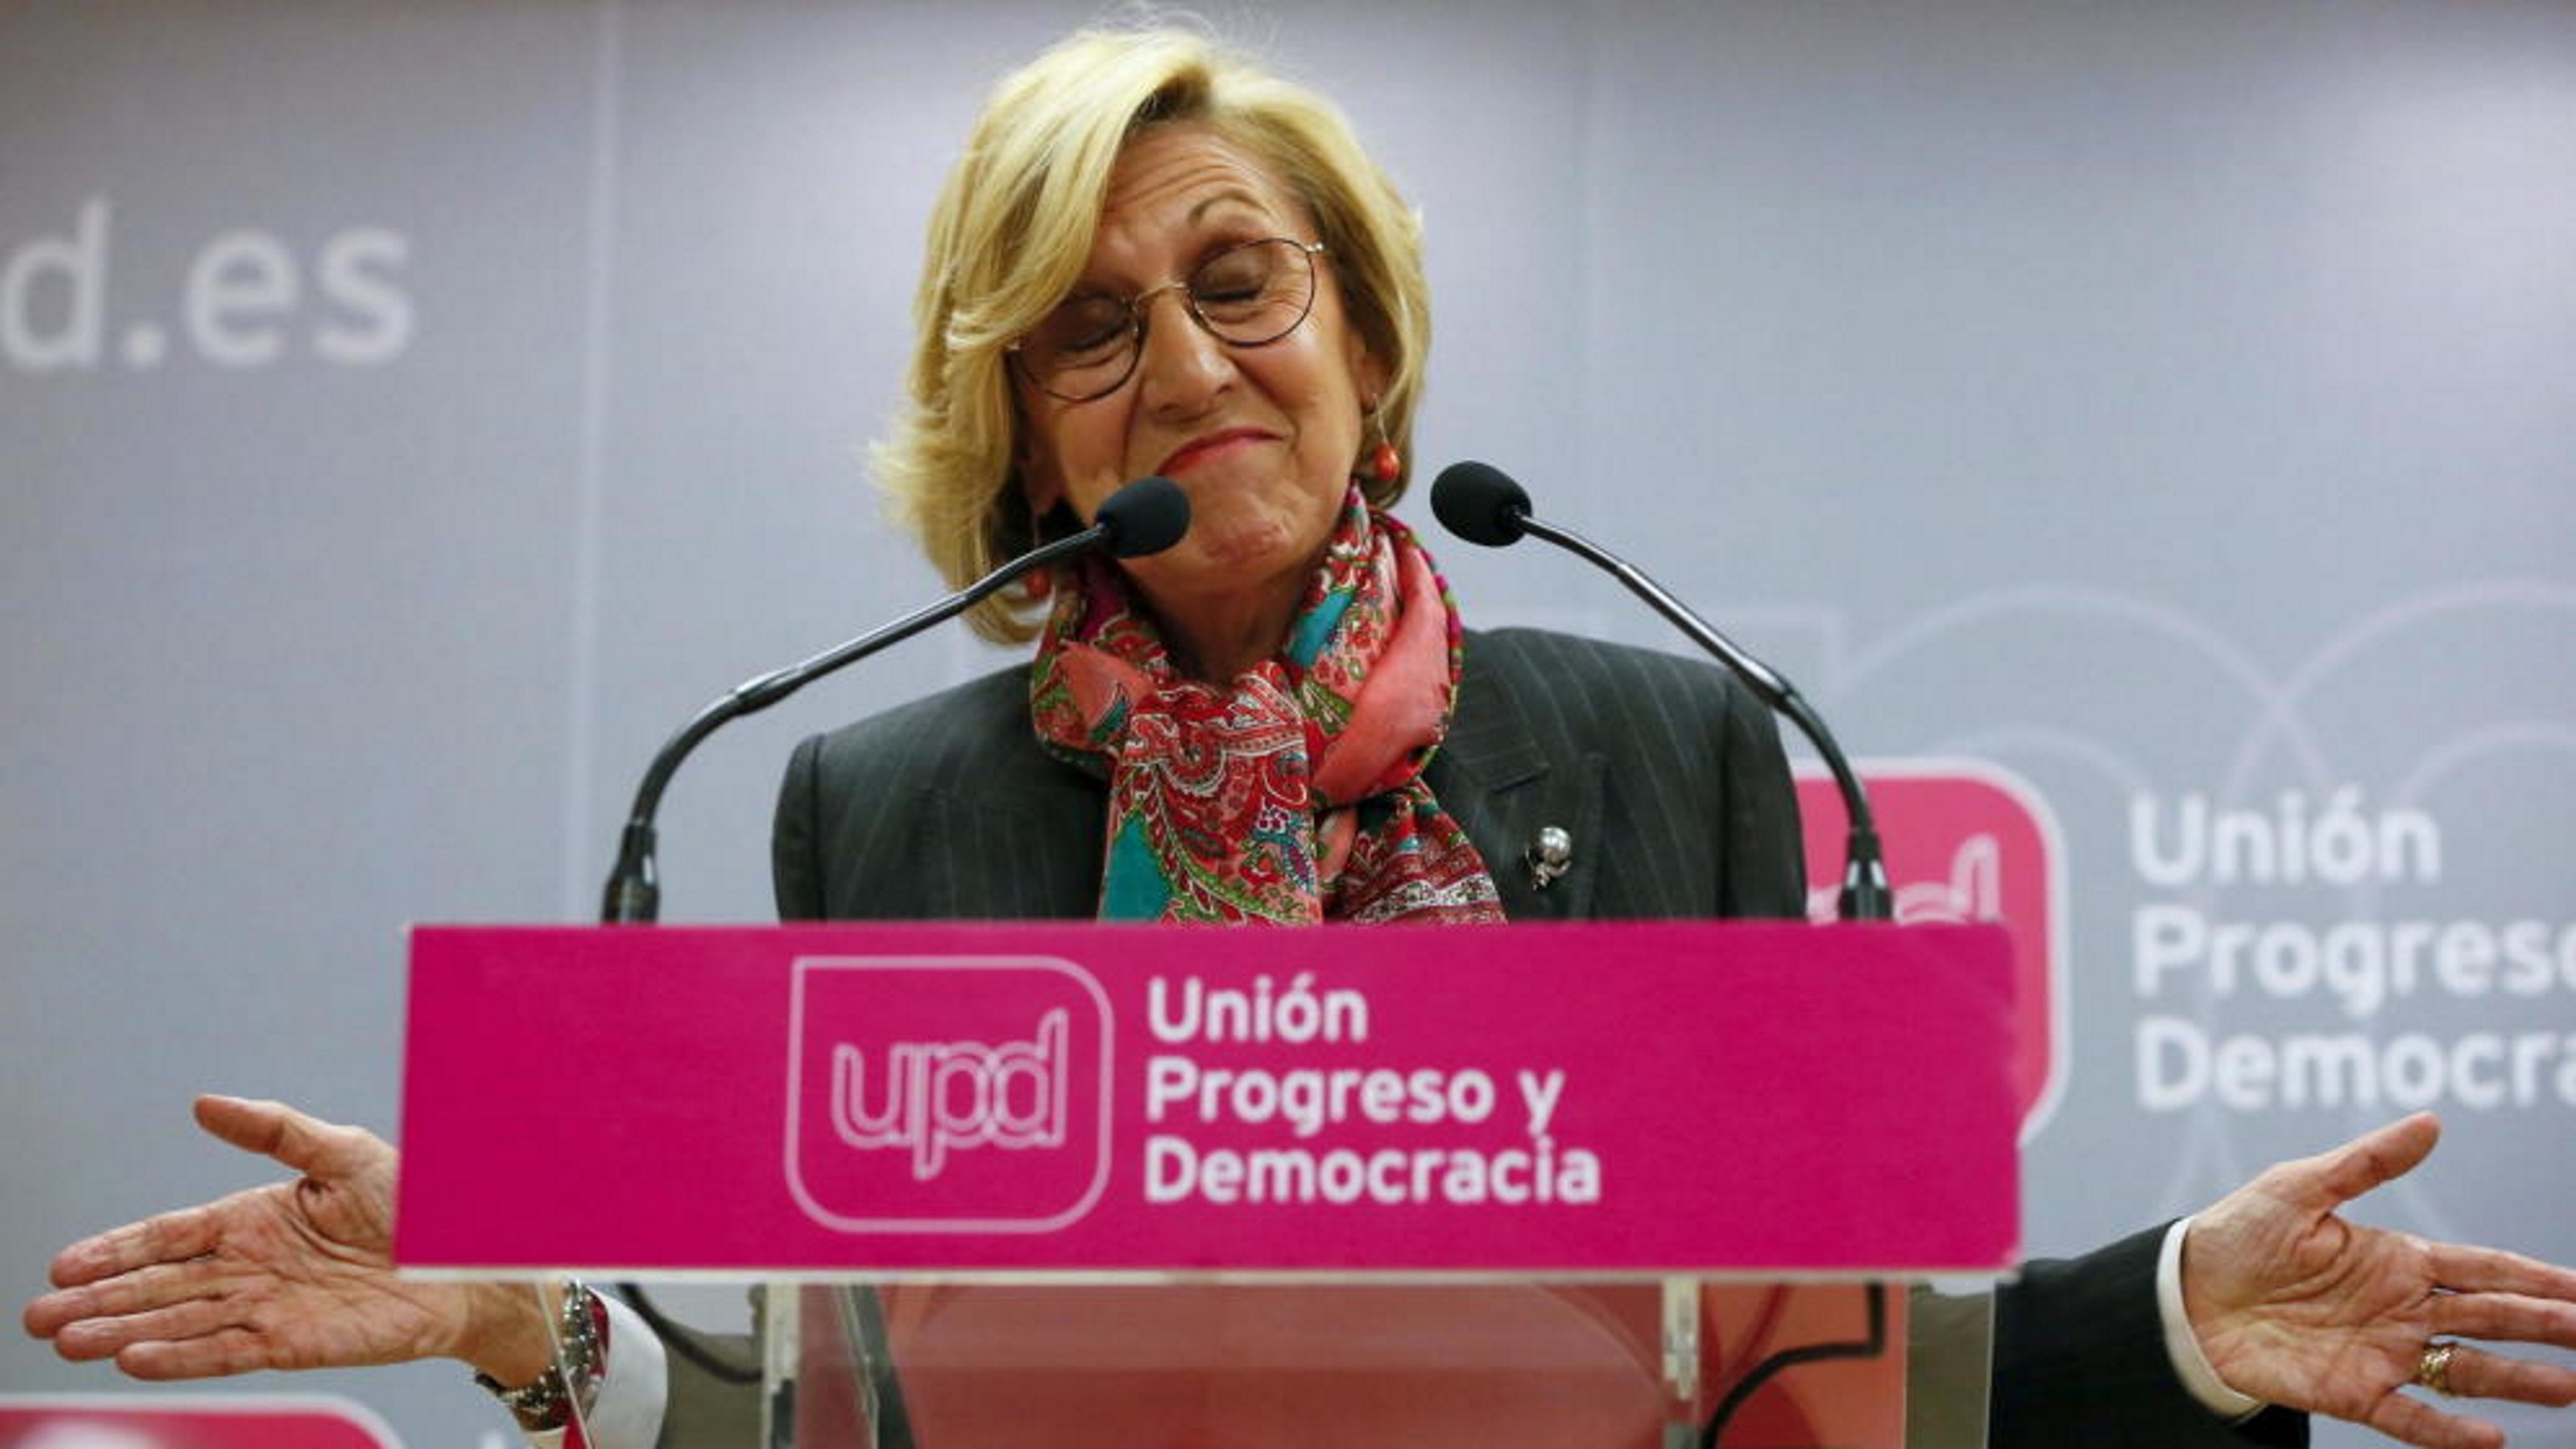 Rosa Díez, devastada pel resultat electoral i la xarxa es trenca de riure